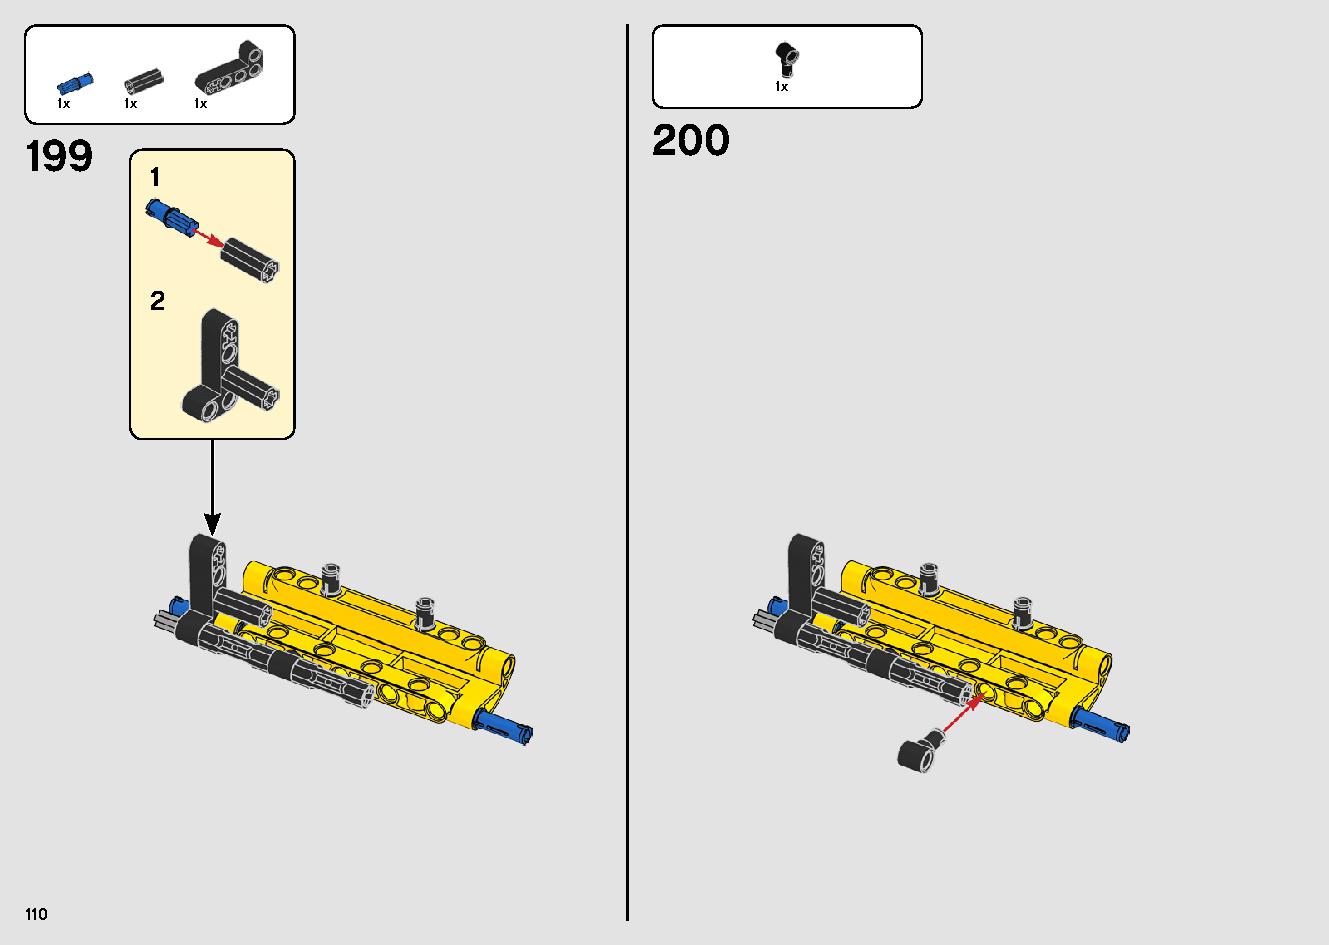 移動式クレーン車 42108 レゴの商品情報 レゴの説明書・組立方法 110 page